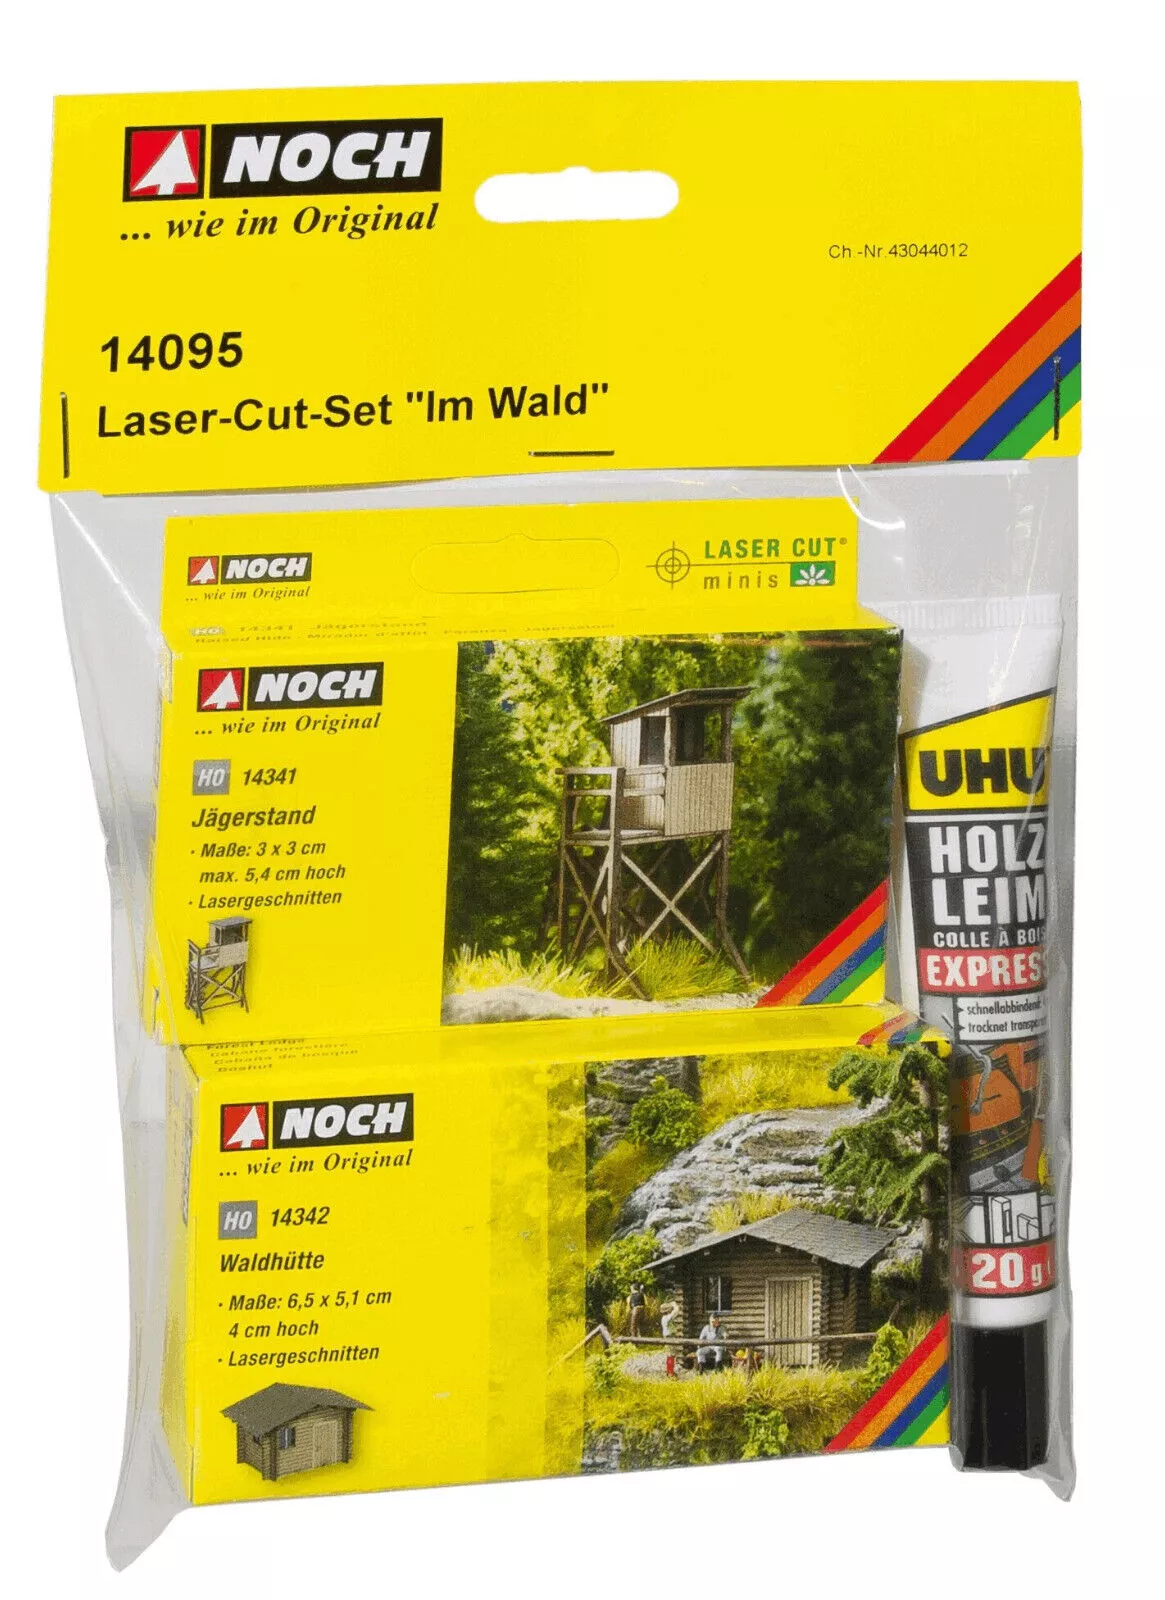 NOCH 14095 Laser-Cut-Set "Im Wald"